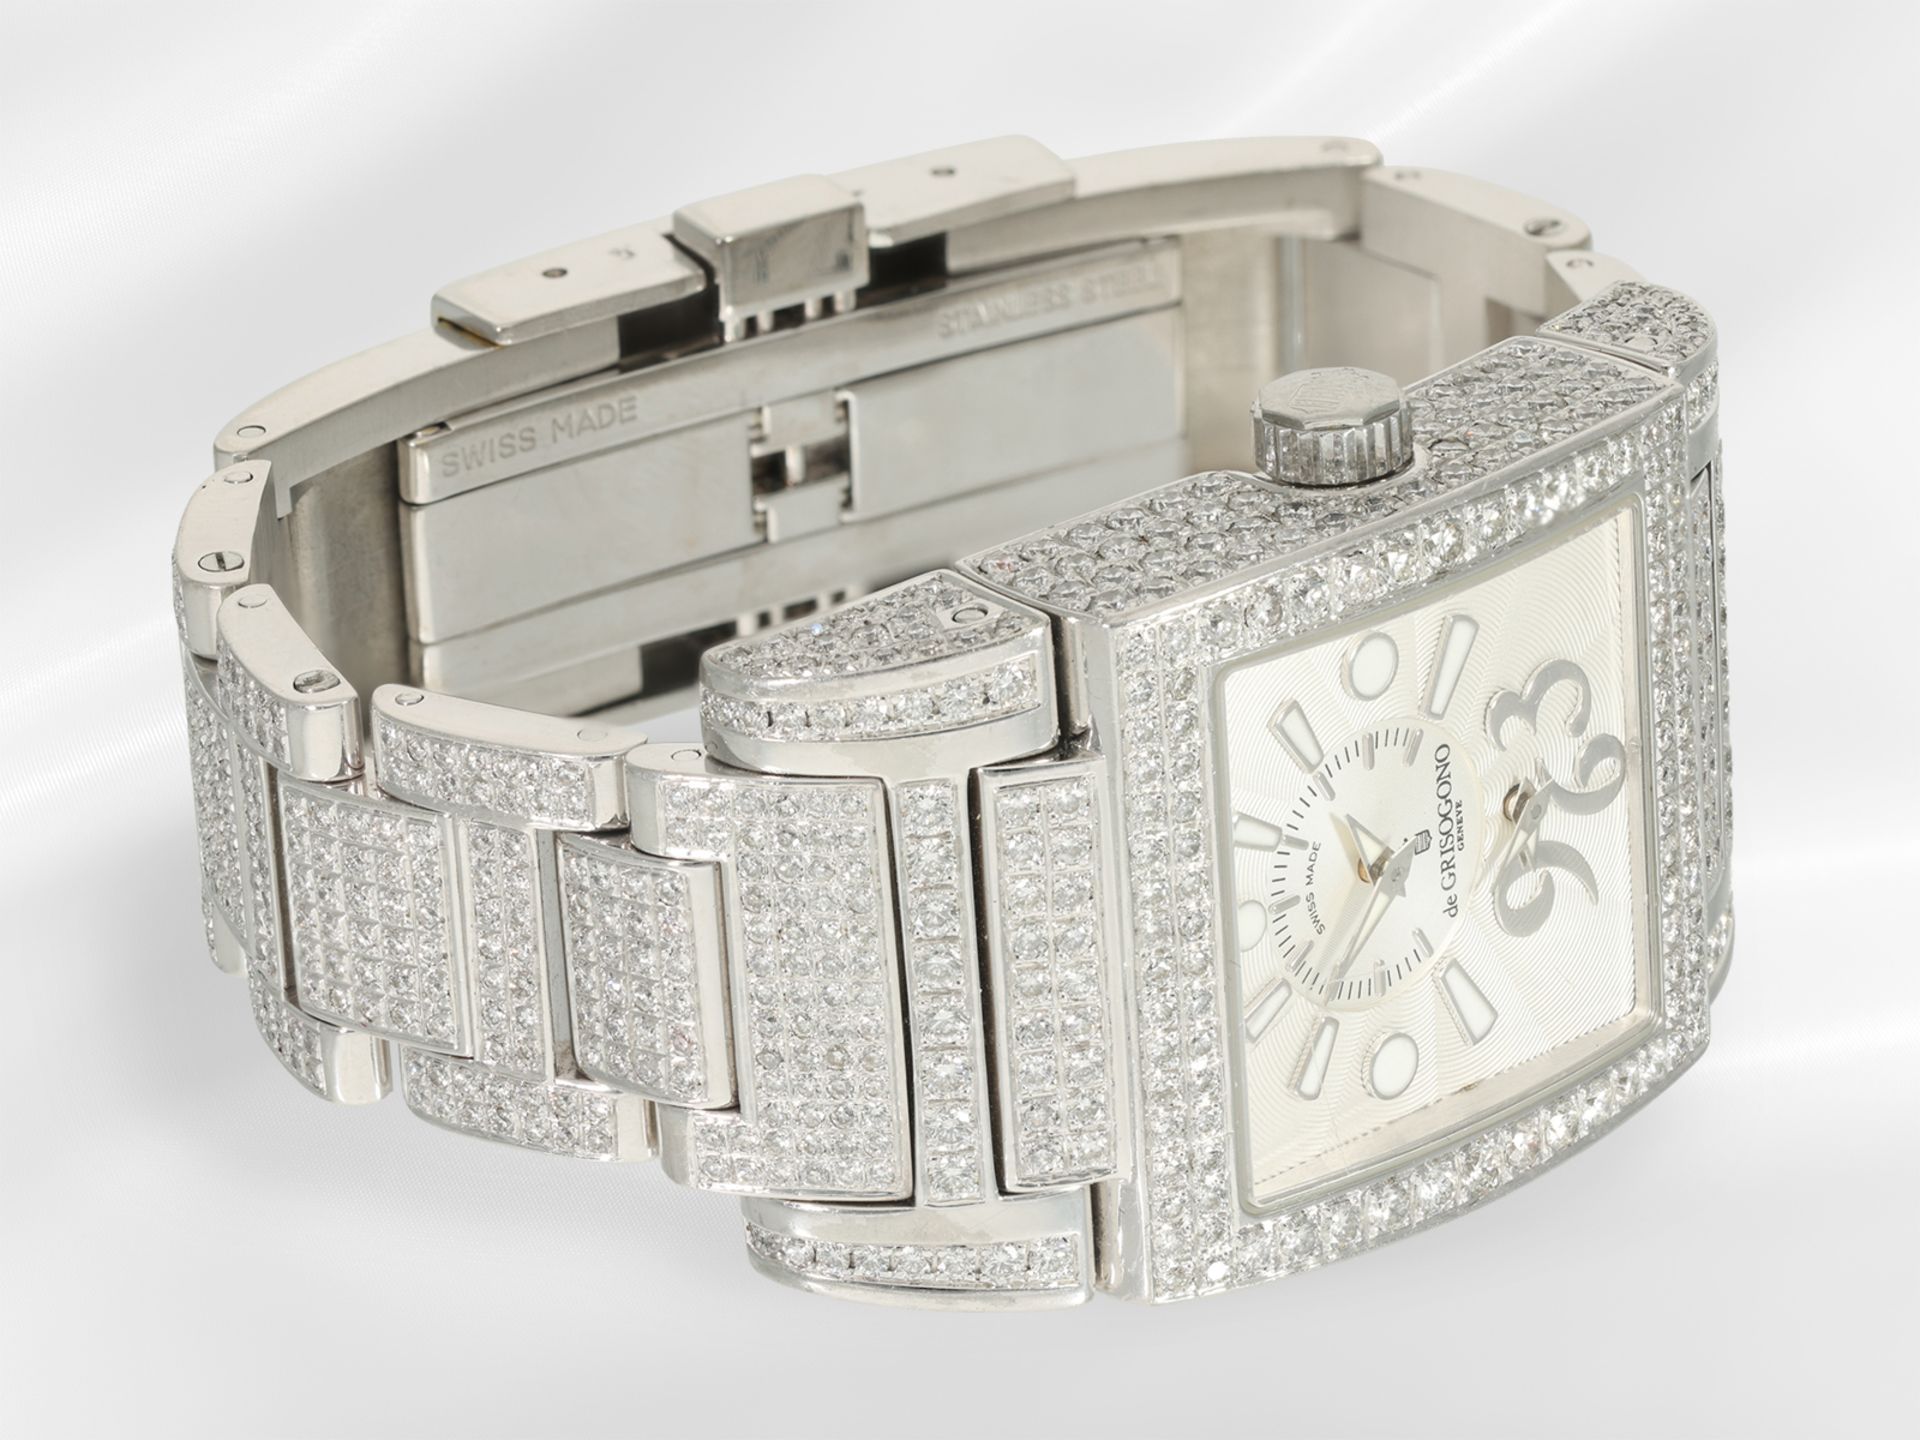 Armbanduhr: sehr hochwertige, luxuriöse Herrenuhr/Damenuhr, "Instrumentino by Grisogno Geneve" - Bild 5 aus 8